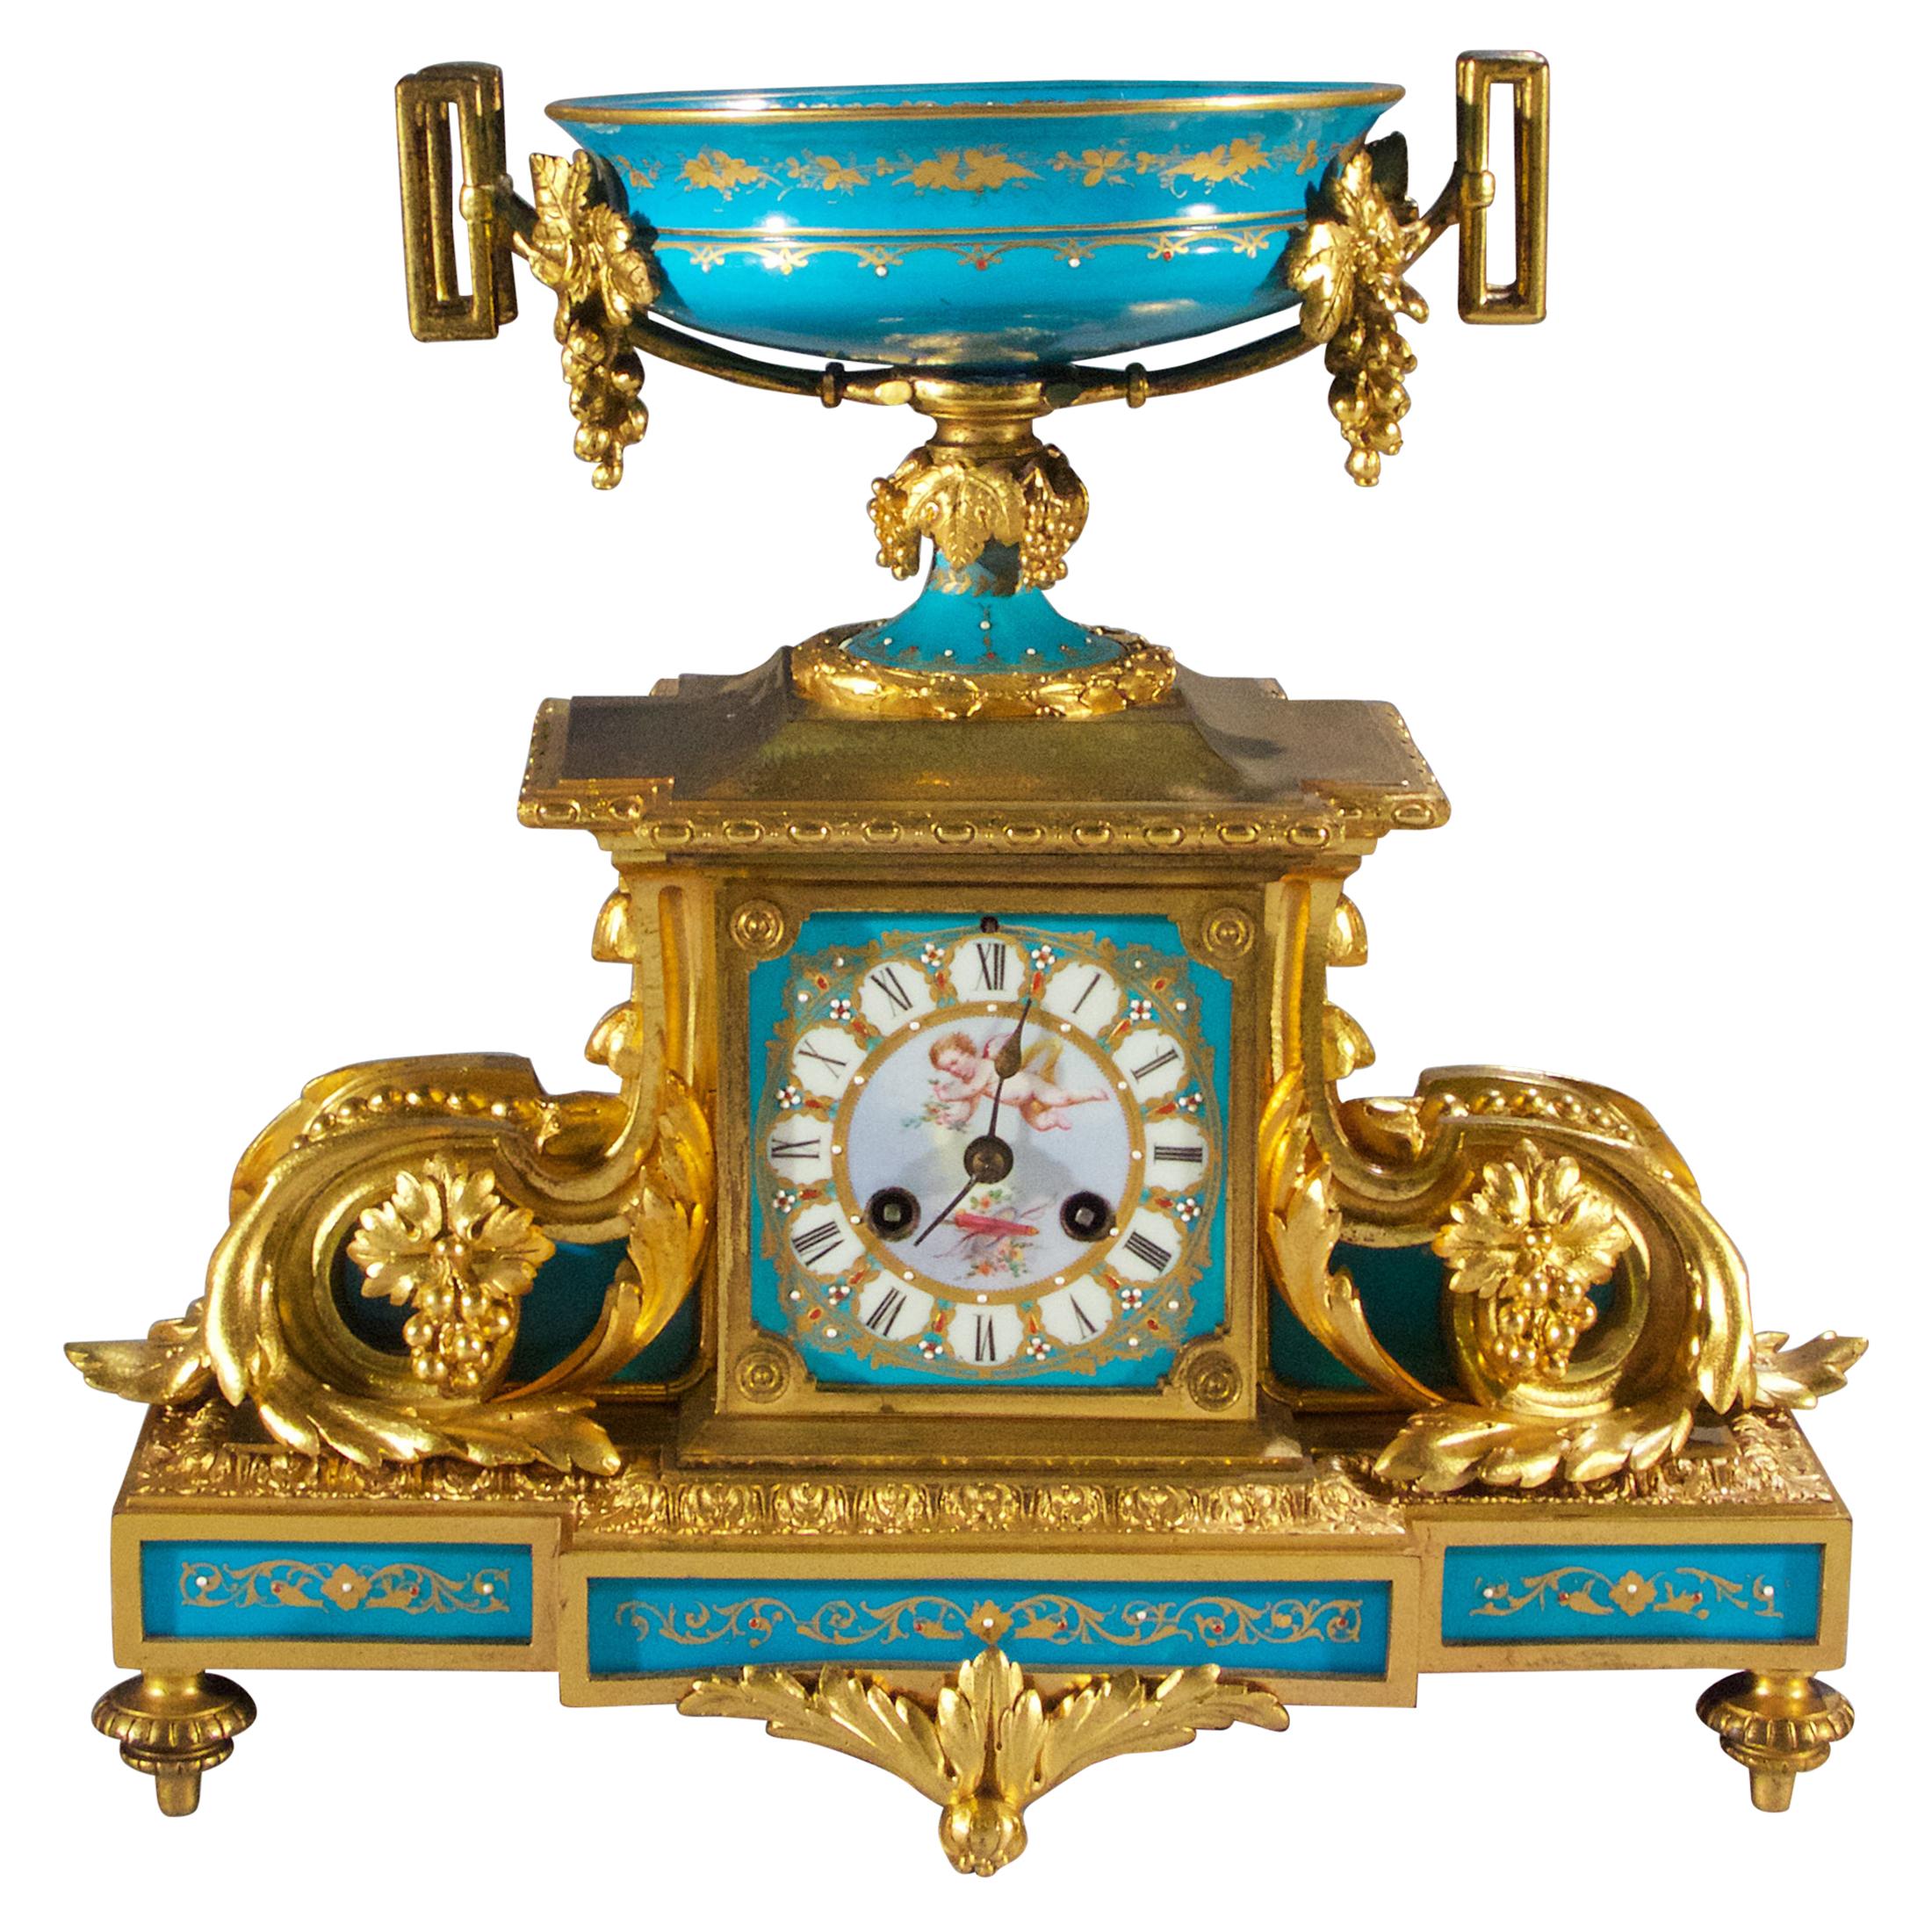 Fine Quality Sèvres-style Louis XVI Gilt-Bronze and Porcelain Mantel Clock